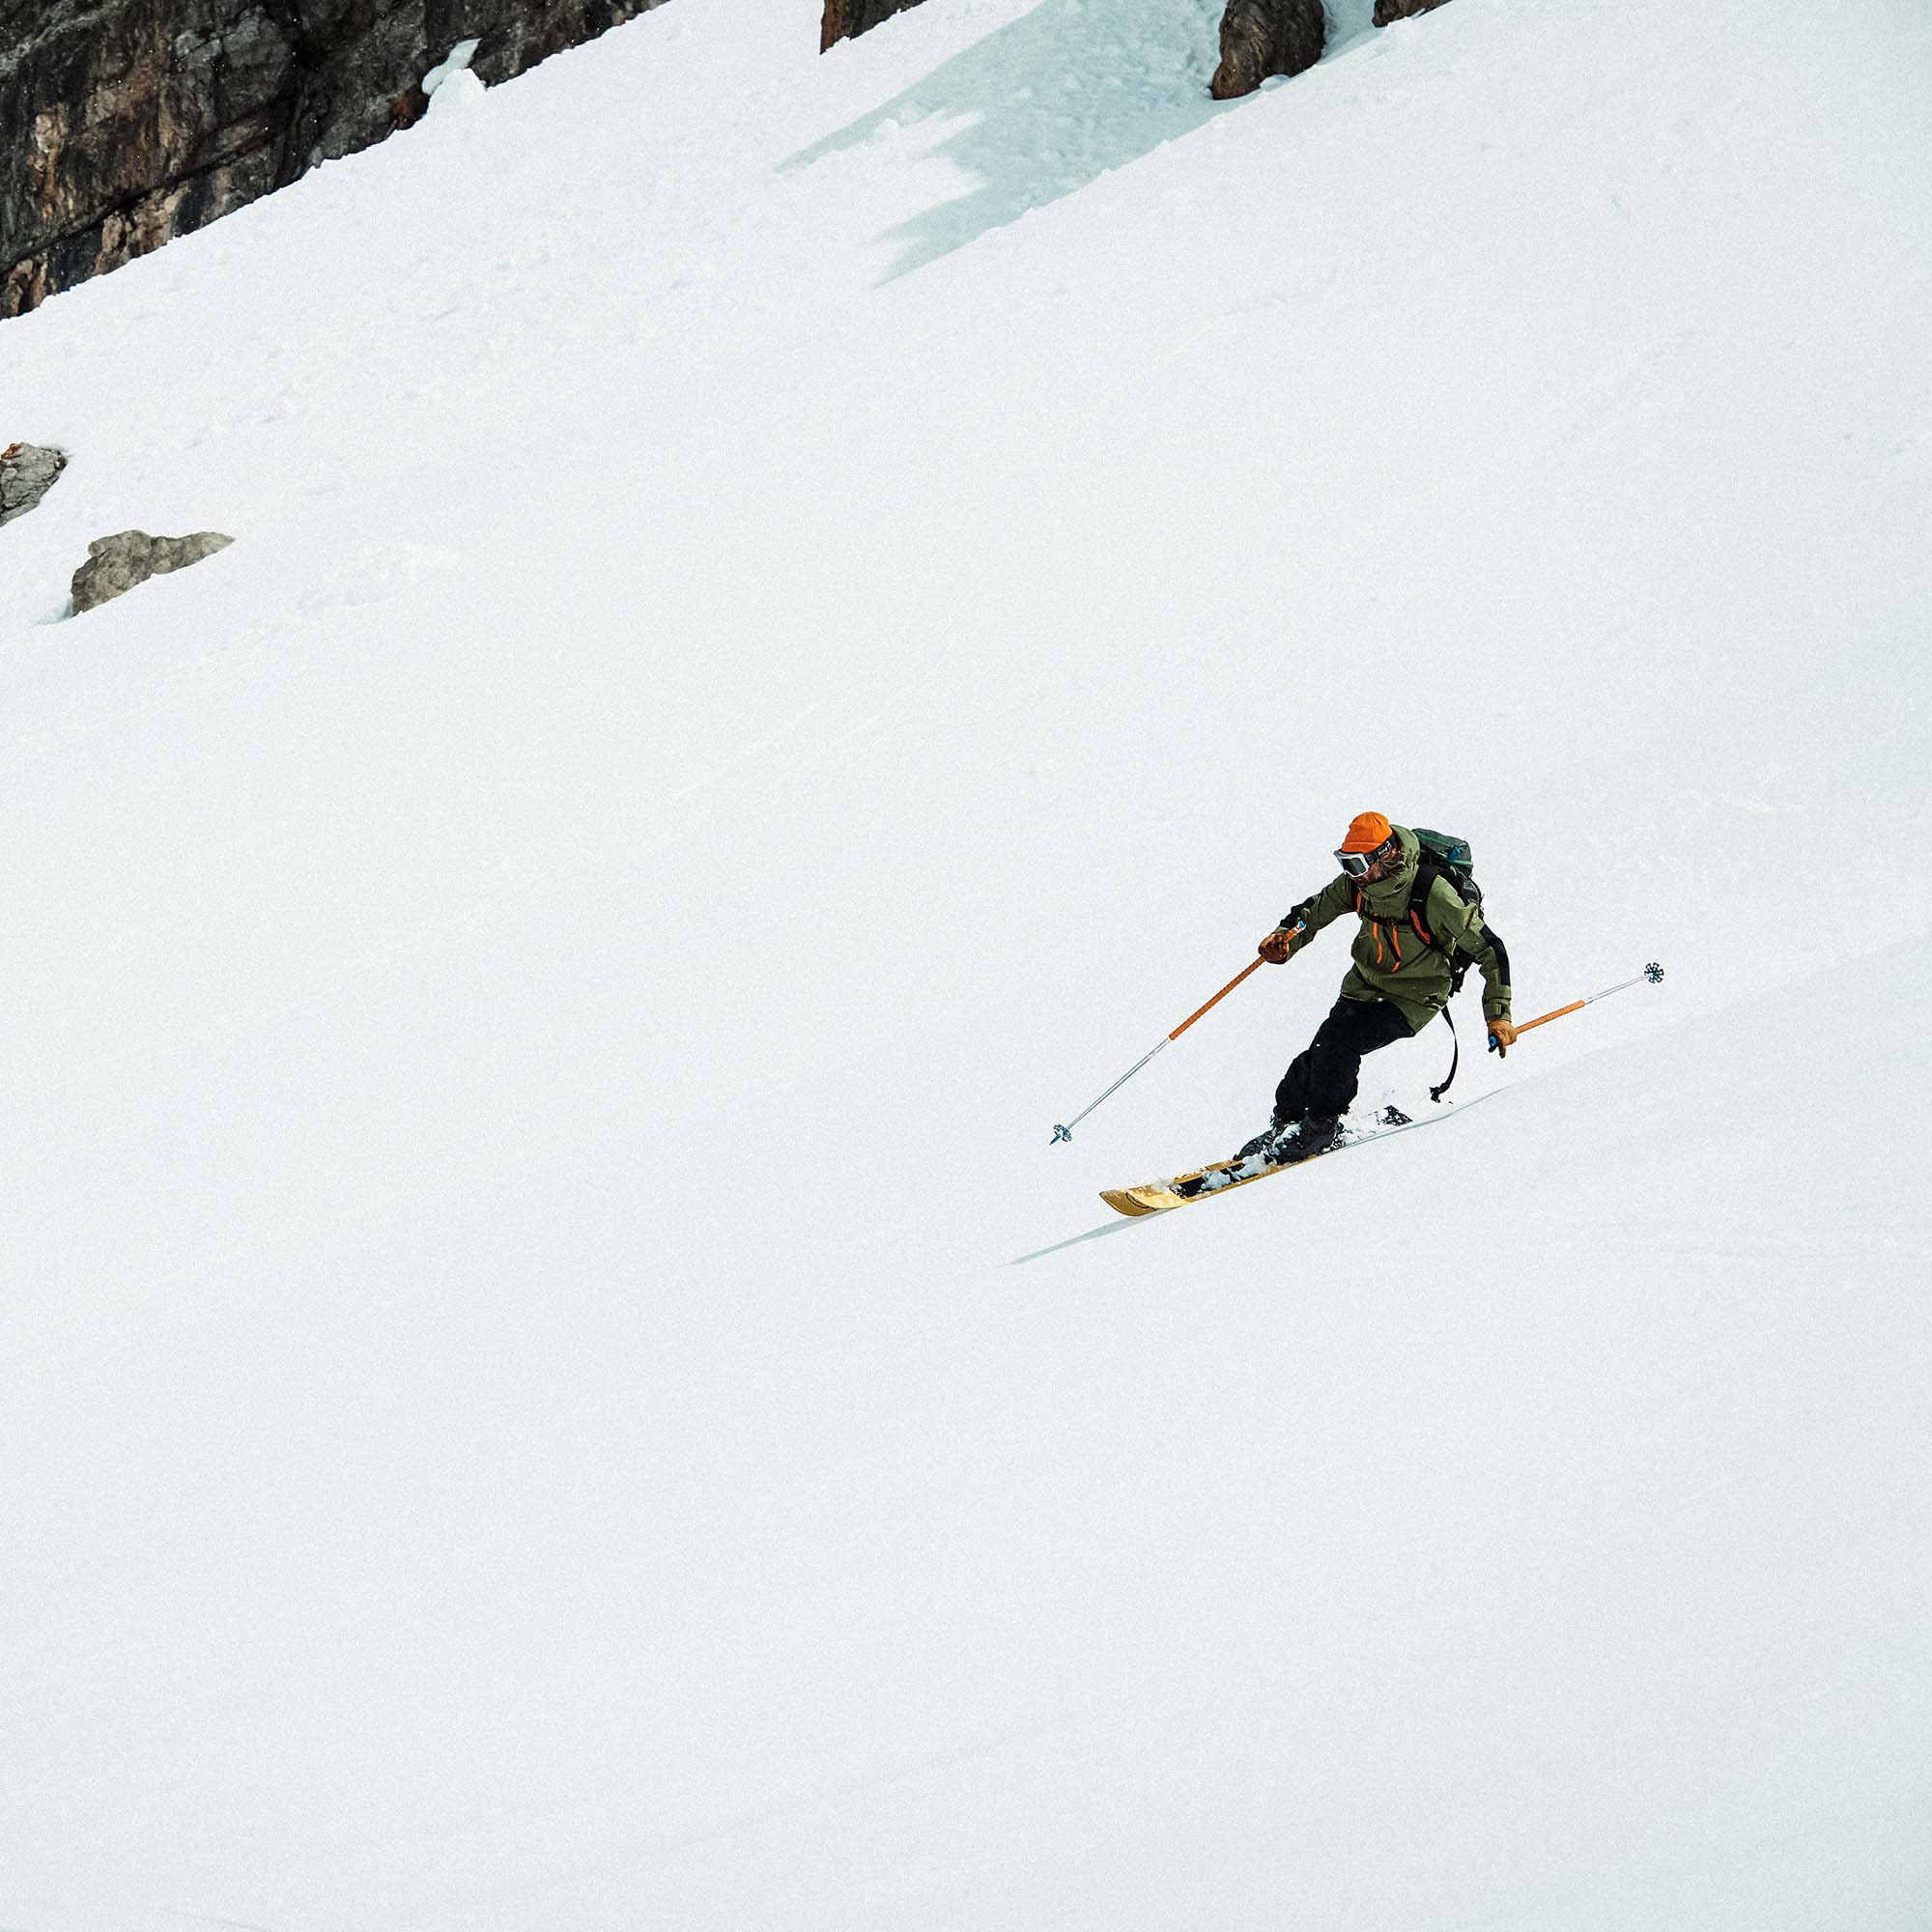 Planks Charger 3L Ski/Snowboard Jacket